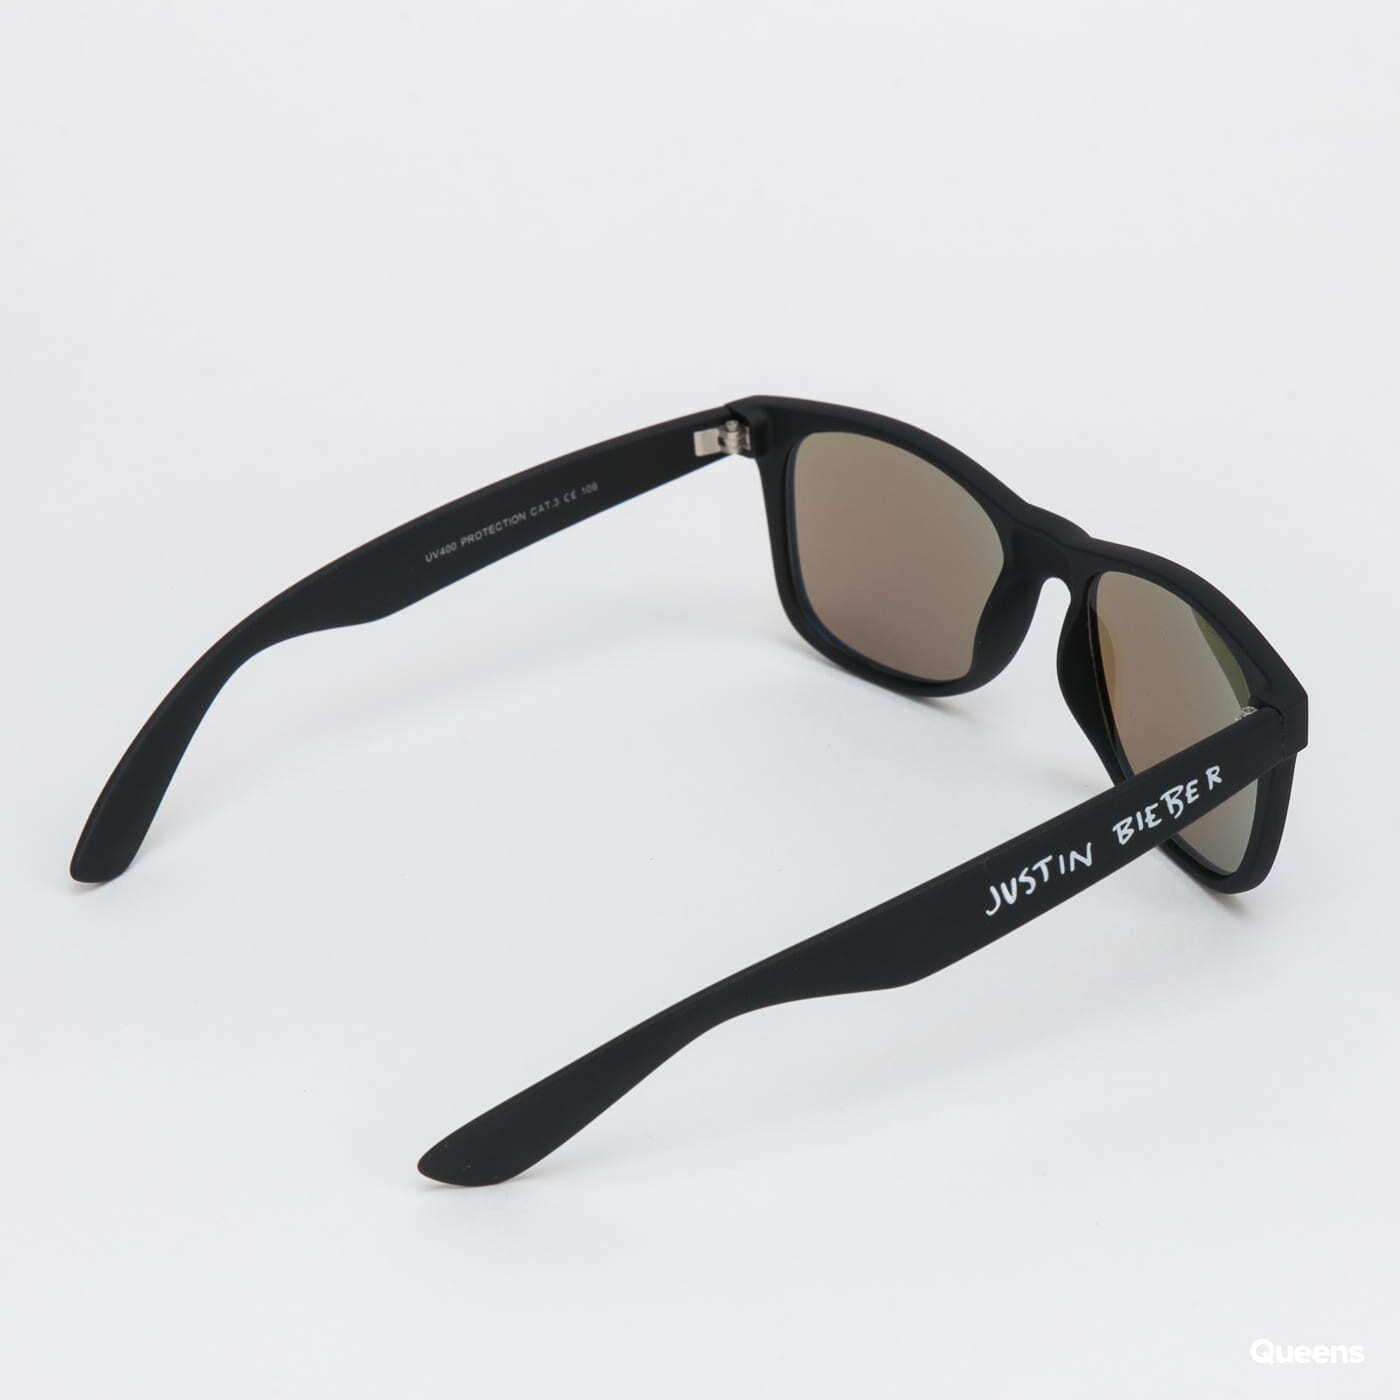 Sonnenbrillen Urban Classics Justin Bieber Sunglasses MT Black/ Blue |  Queens